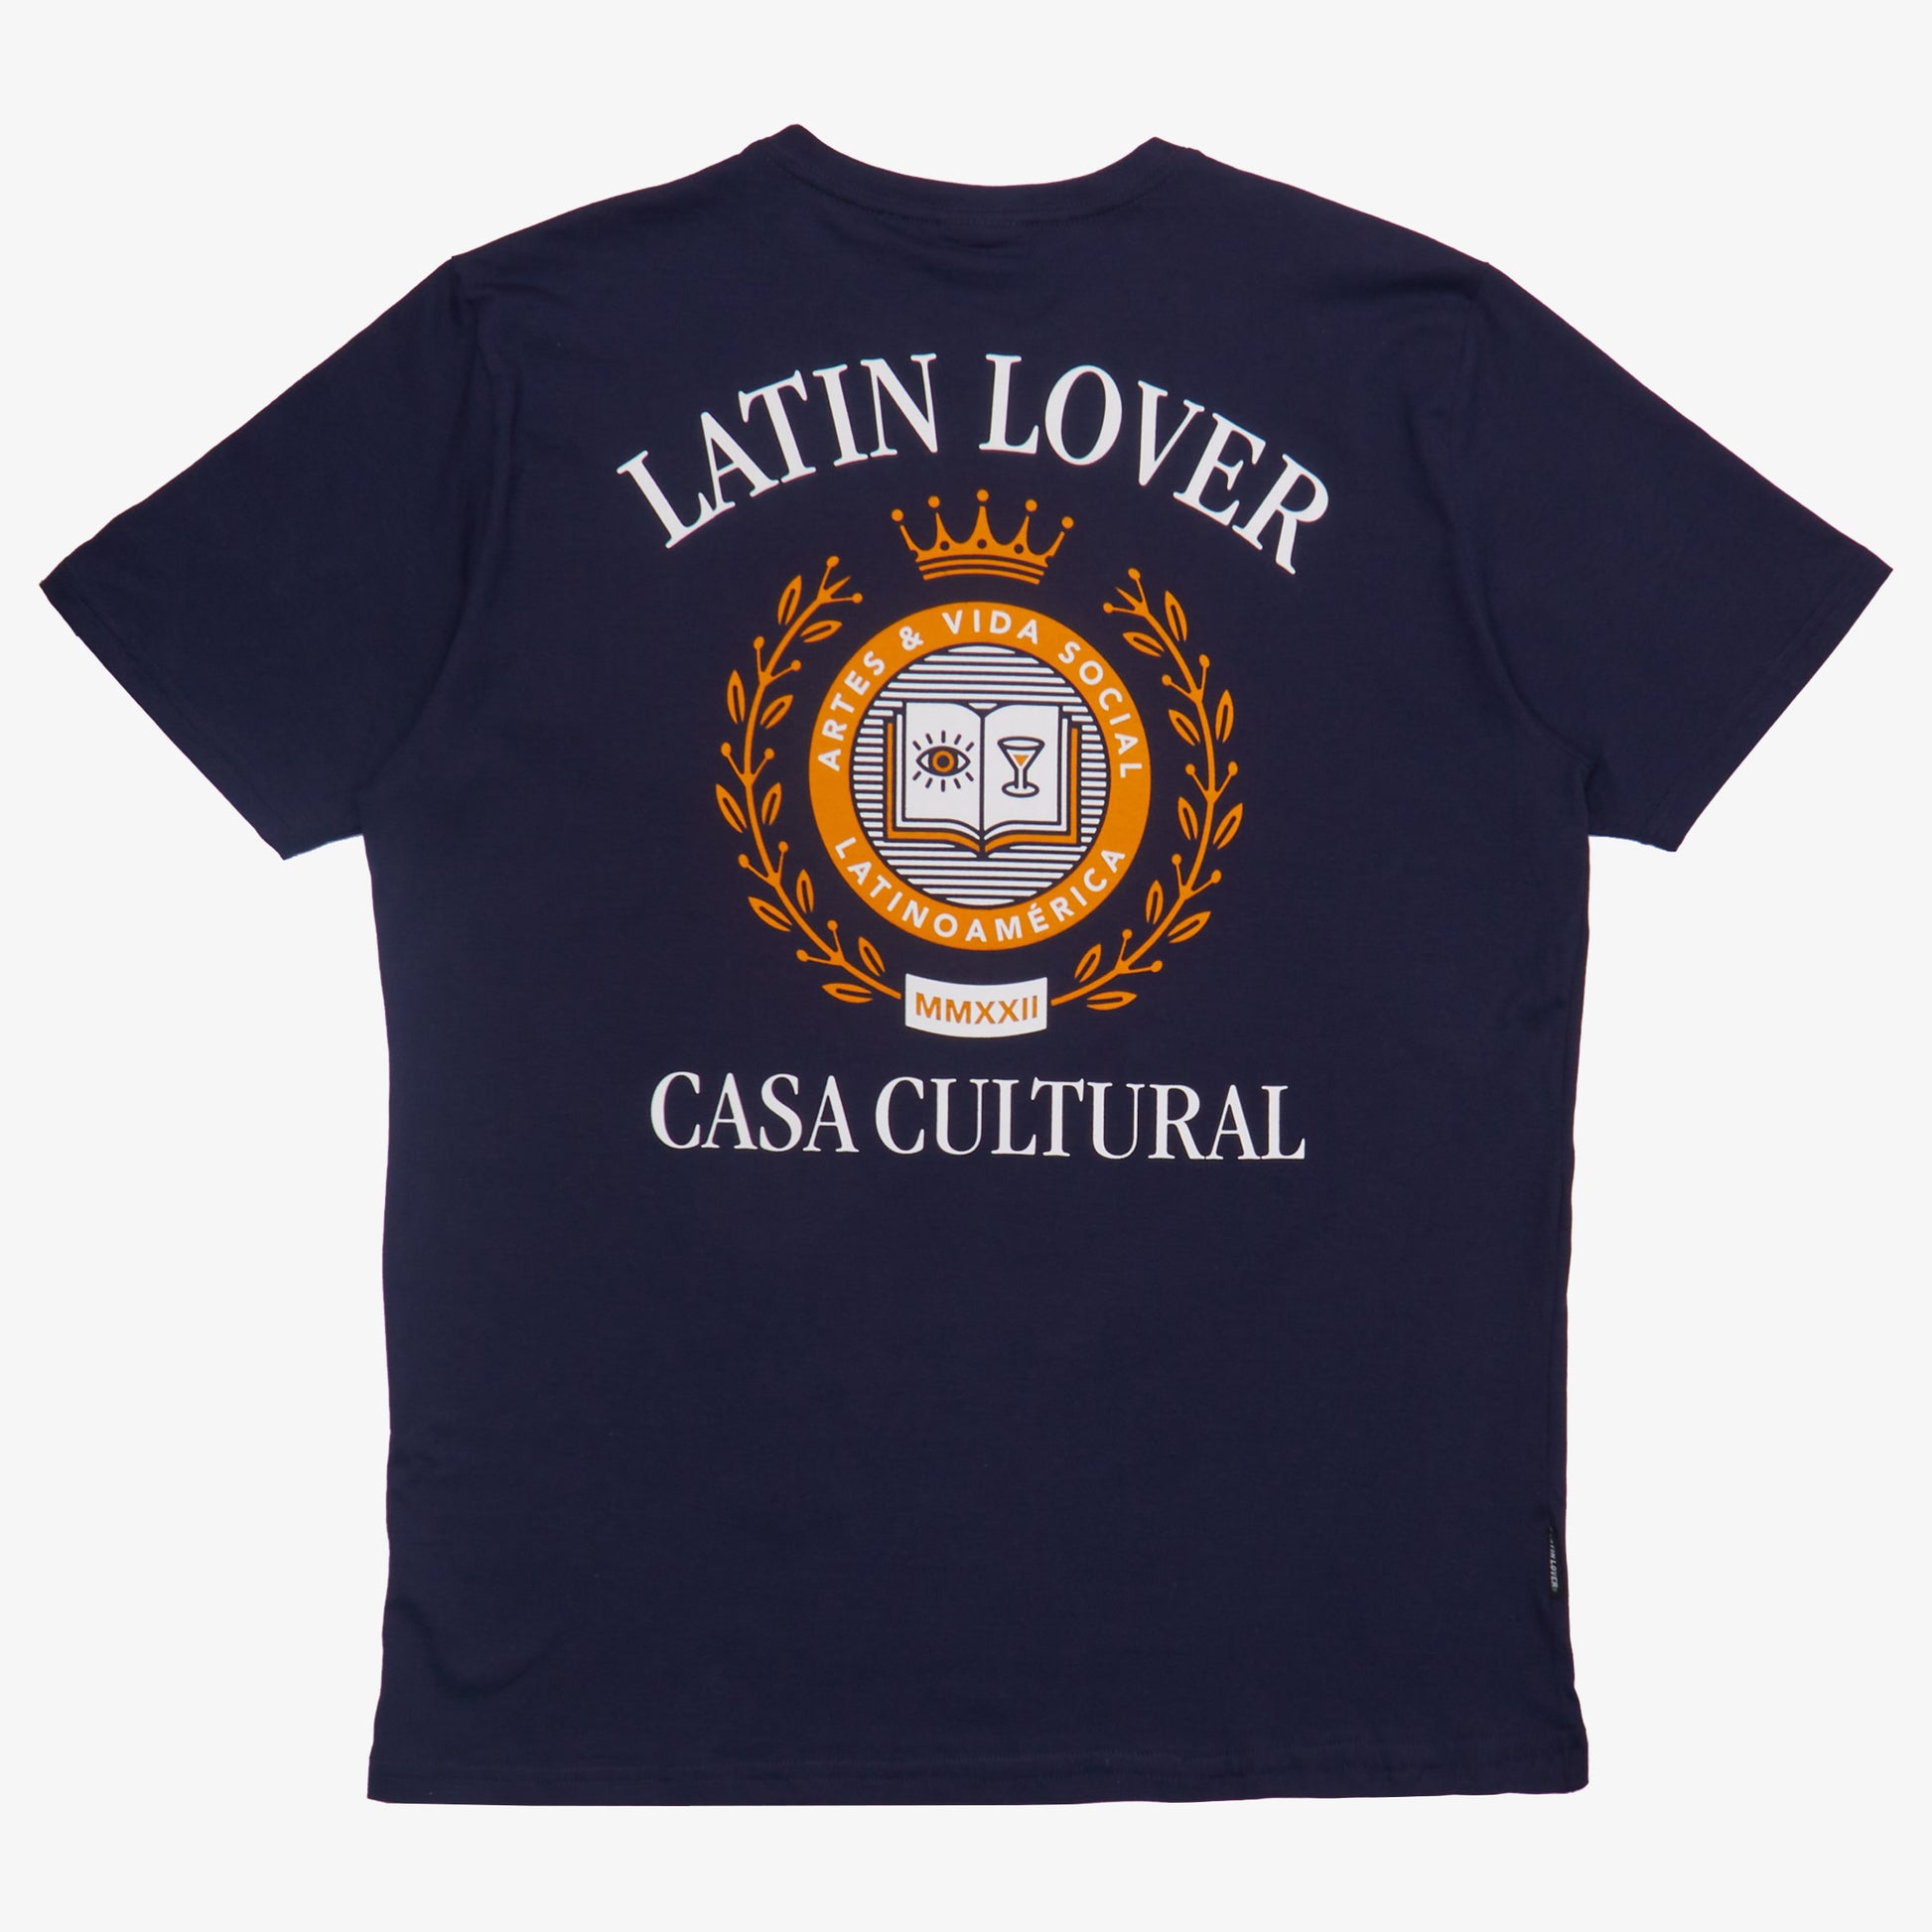 soy-latin-lover-camiseta-casa-cultural-artes-y-vida-social-azul-navy.jpg